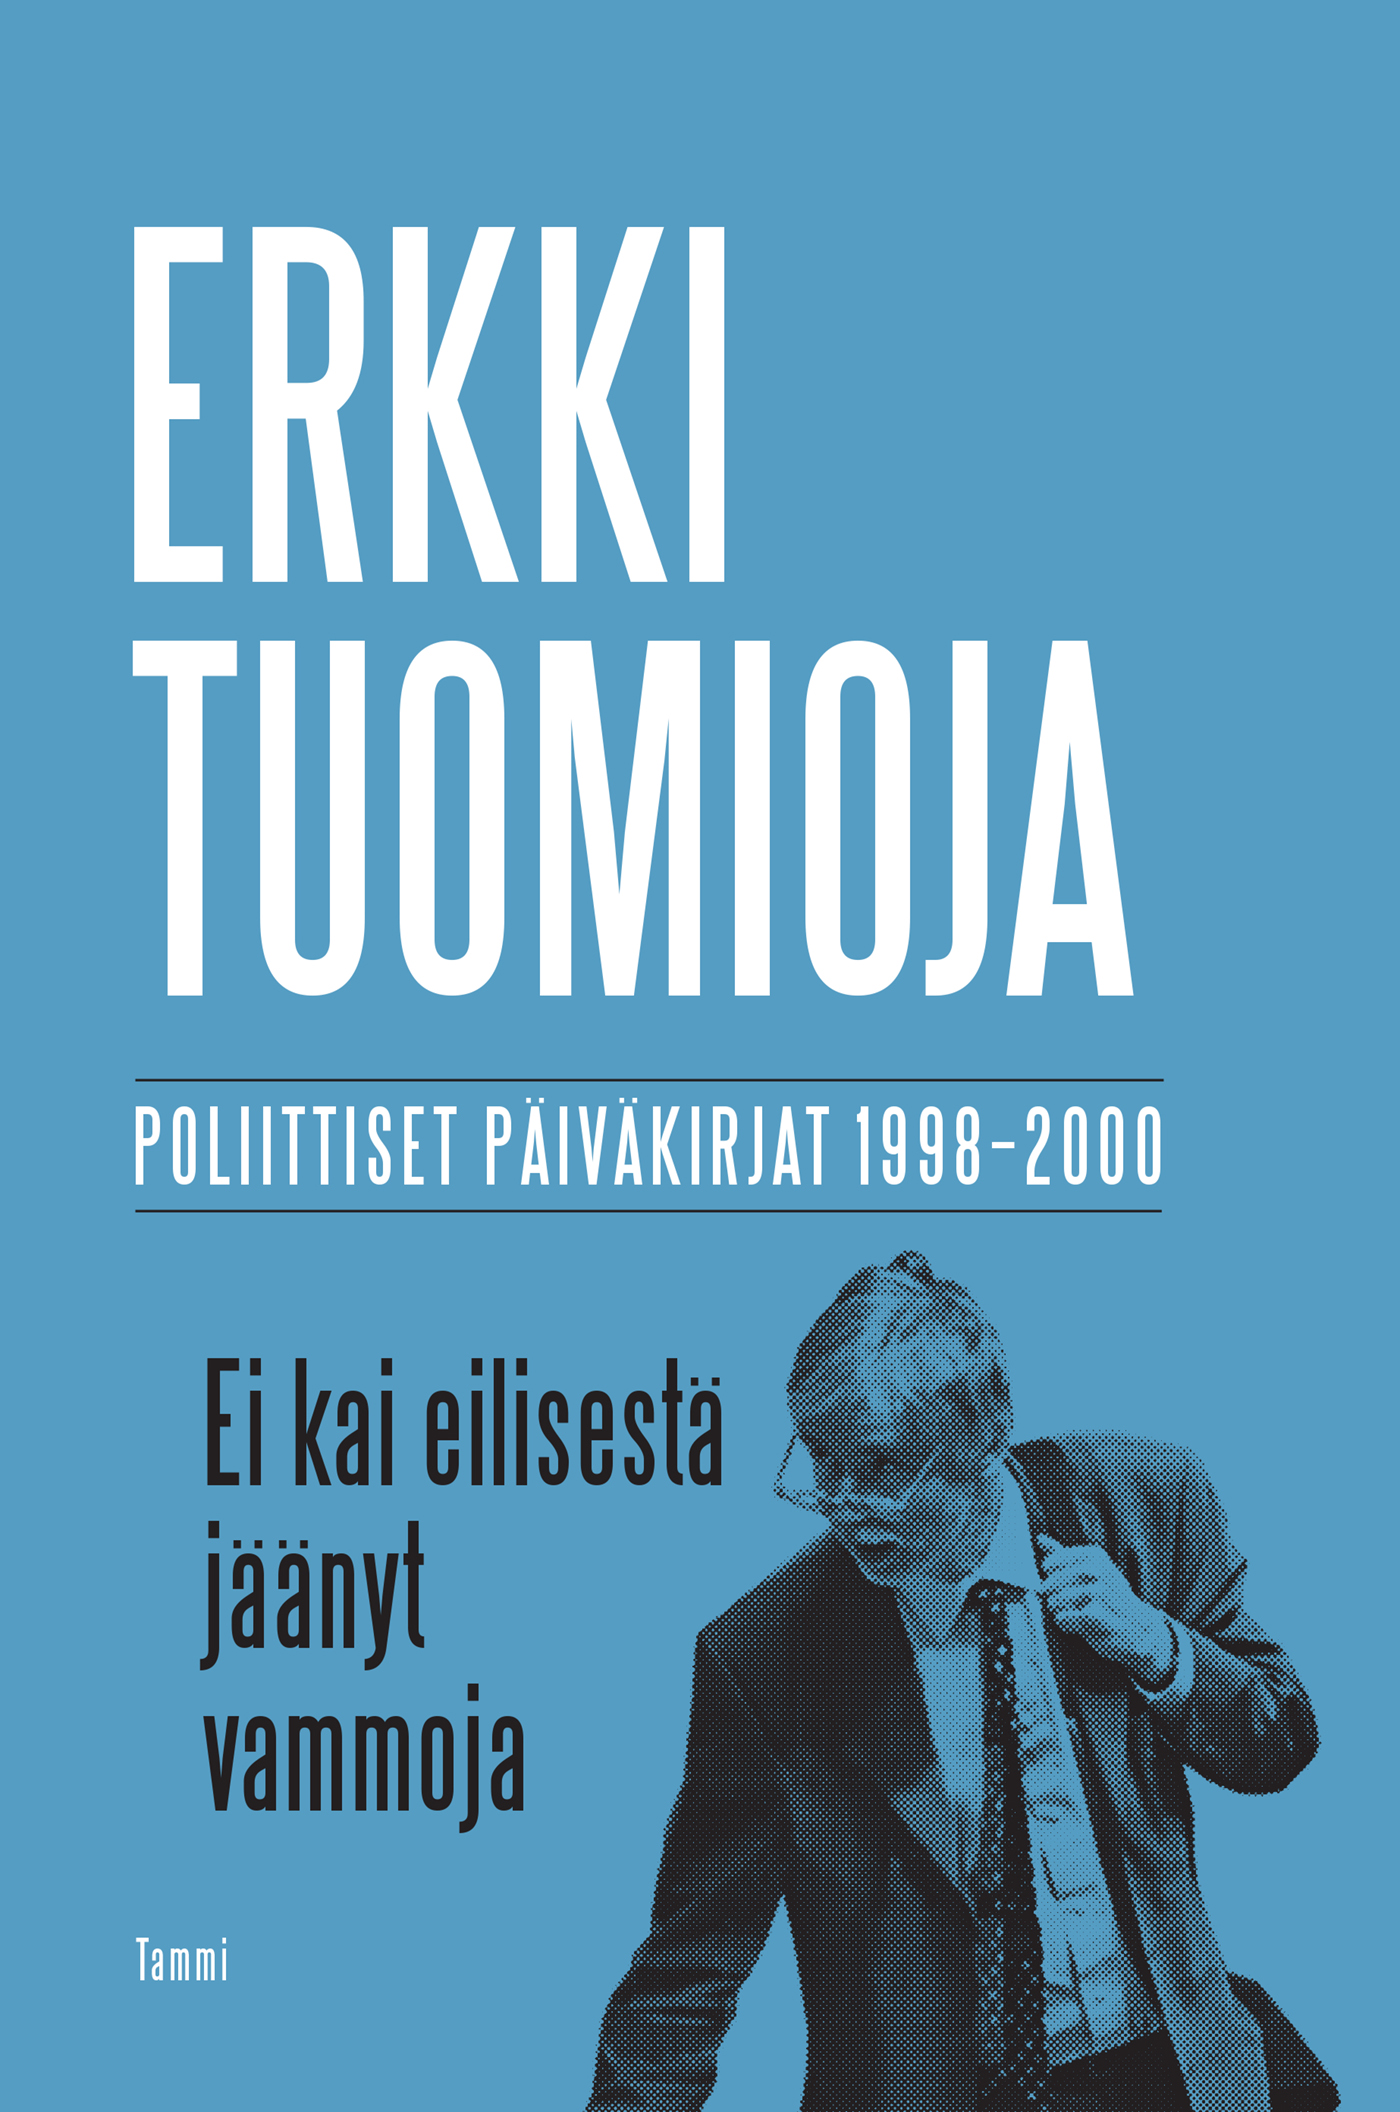 Tuomioja, Erkki - Ei kai eilisestä jäänyt vammoja: Poliittiset päiväkirjat 1998-2000, e-kirja